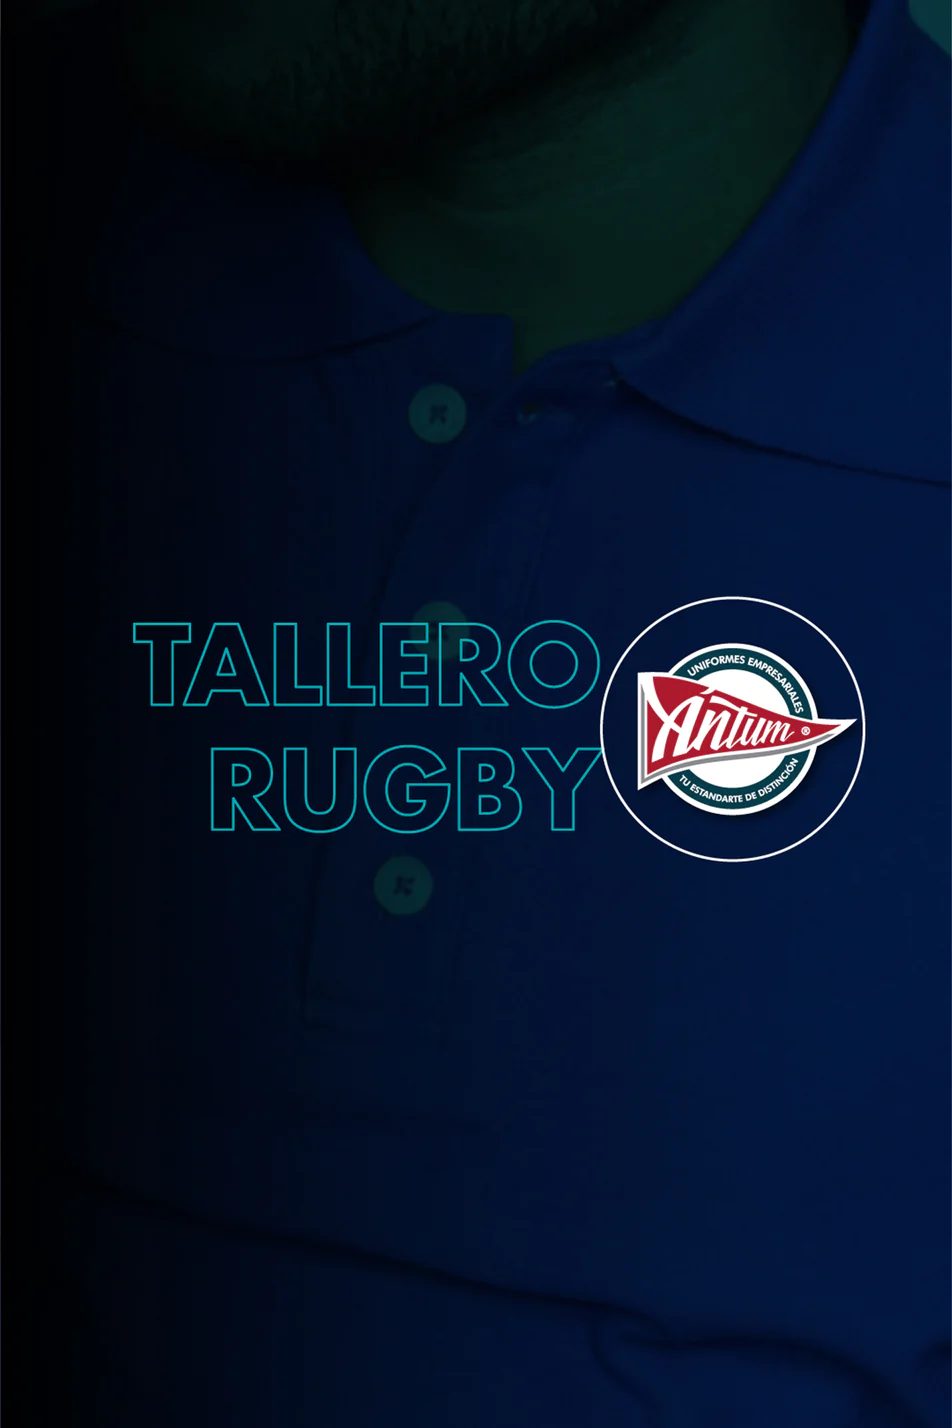 Tallero Polo Rugby (Corrida de tallas)